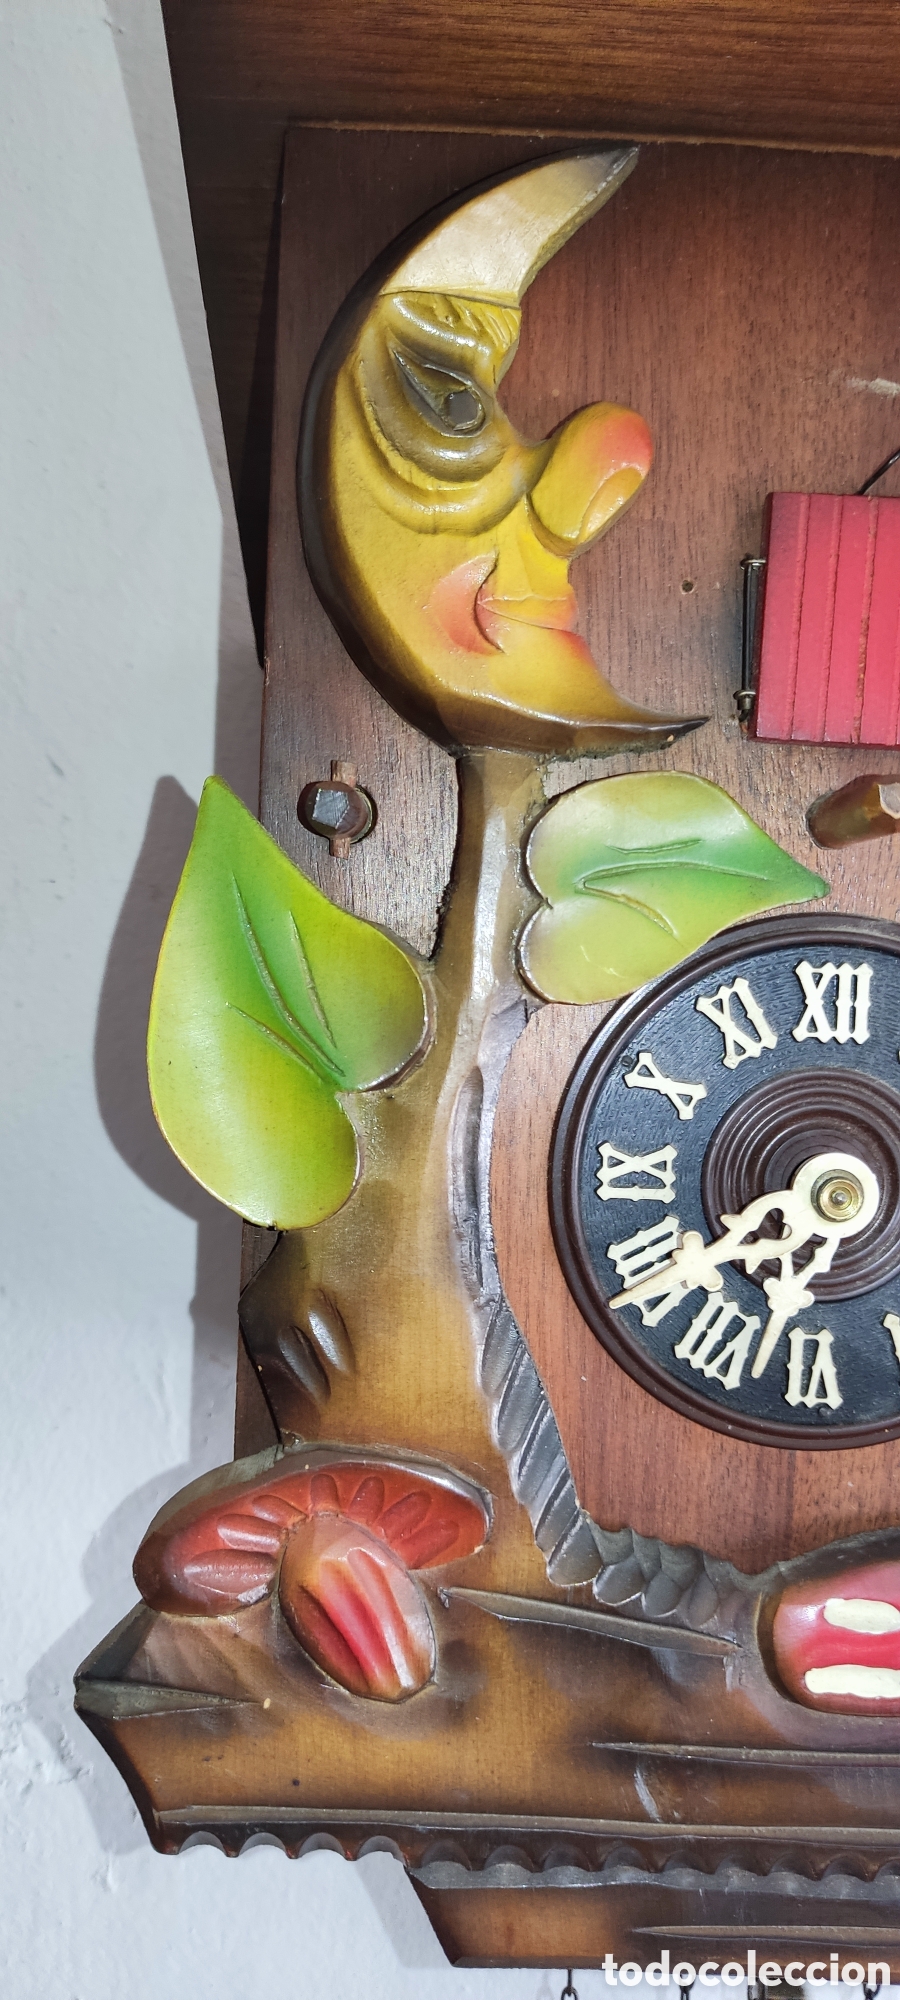 curioso reloj cucu-cuco con automata que toca u - Compra venta en  todocoleccion